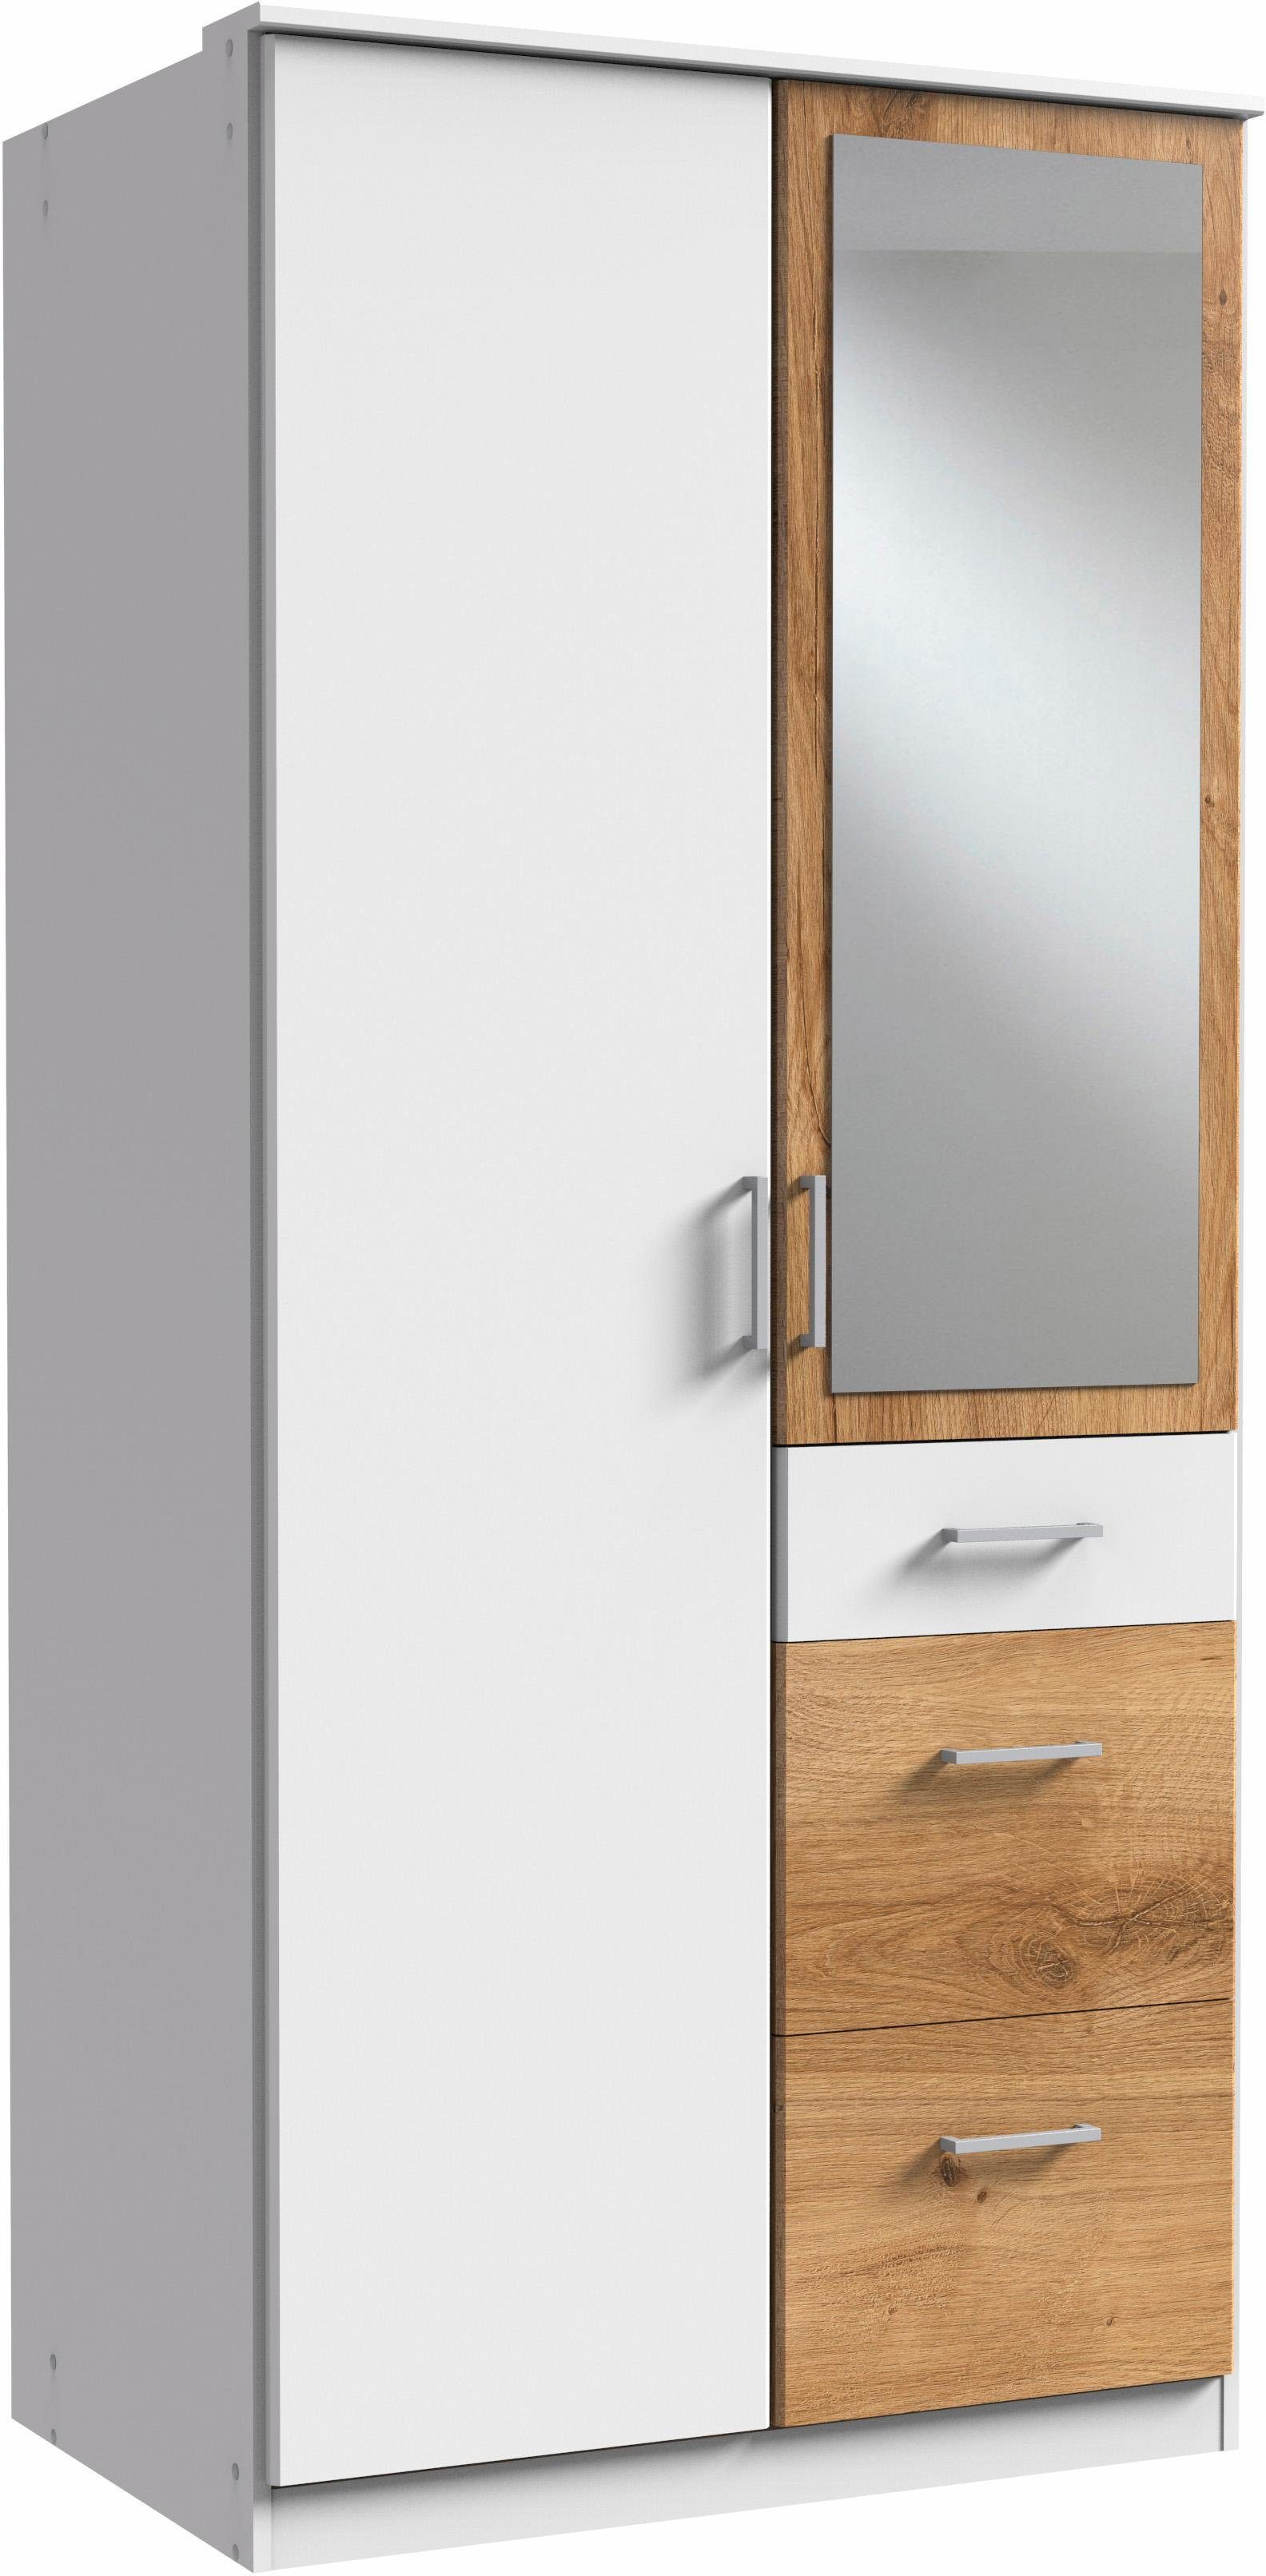 Wimex Kleiderschrank Click weiß/plankeneichefarben mit Spiegel